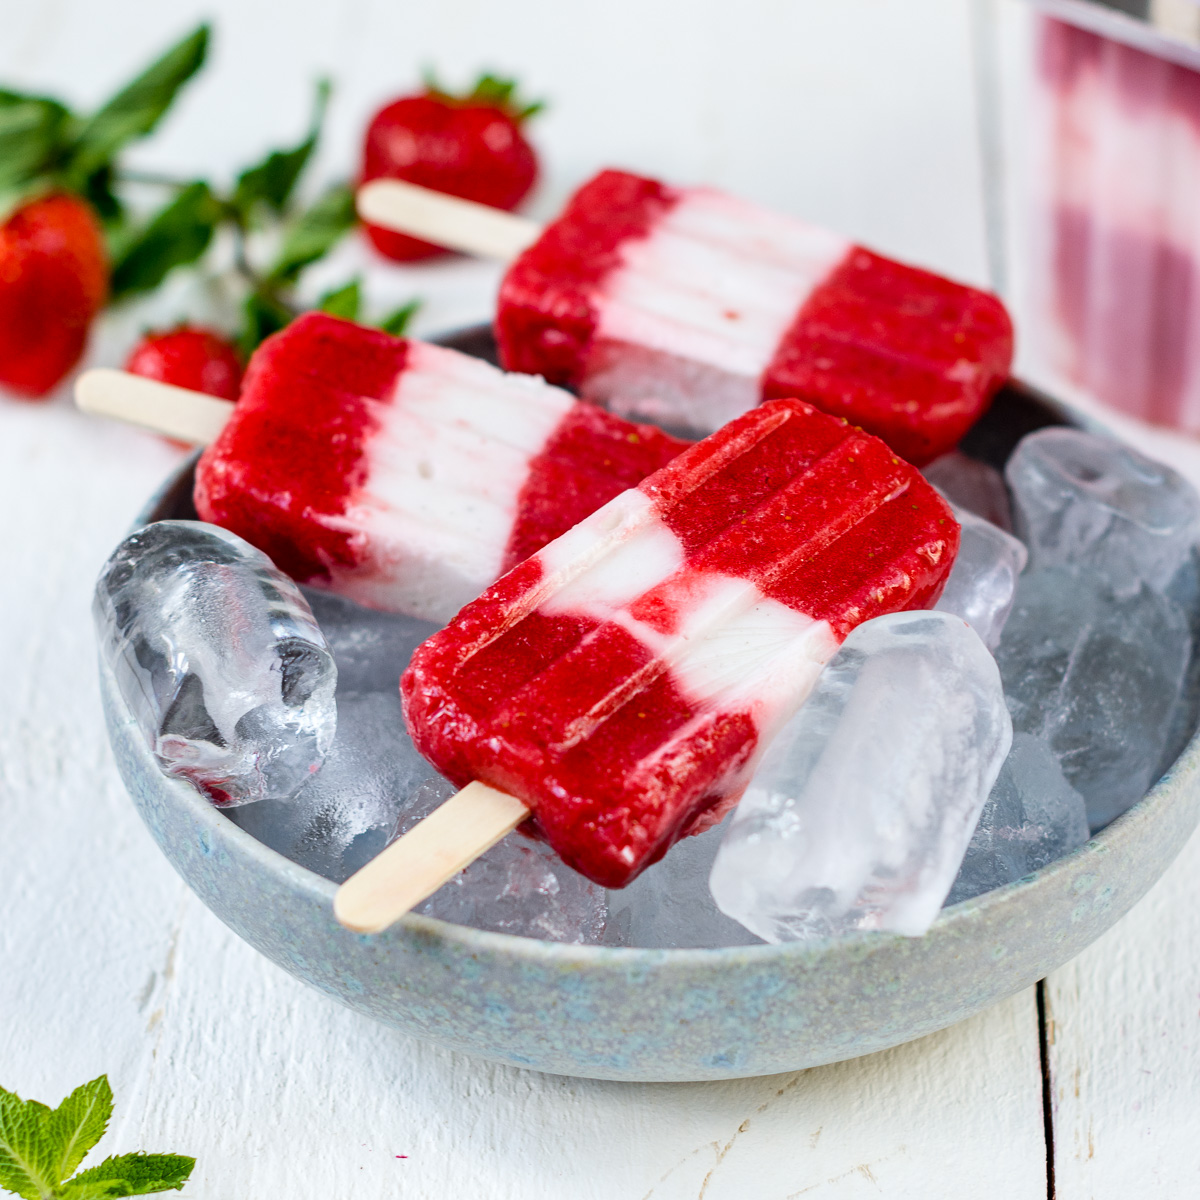 Erdbeer Popsicles in Schale mit Eis